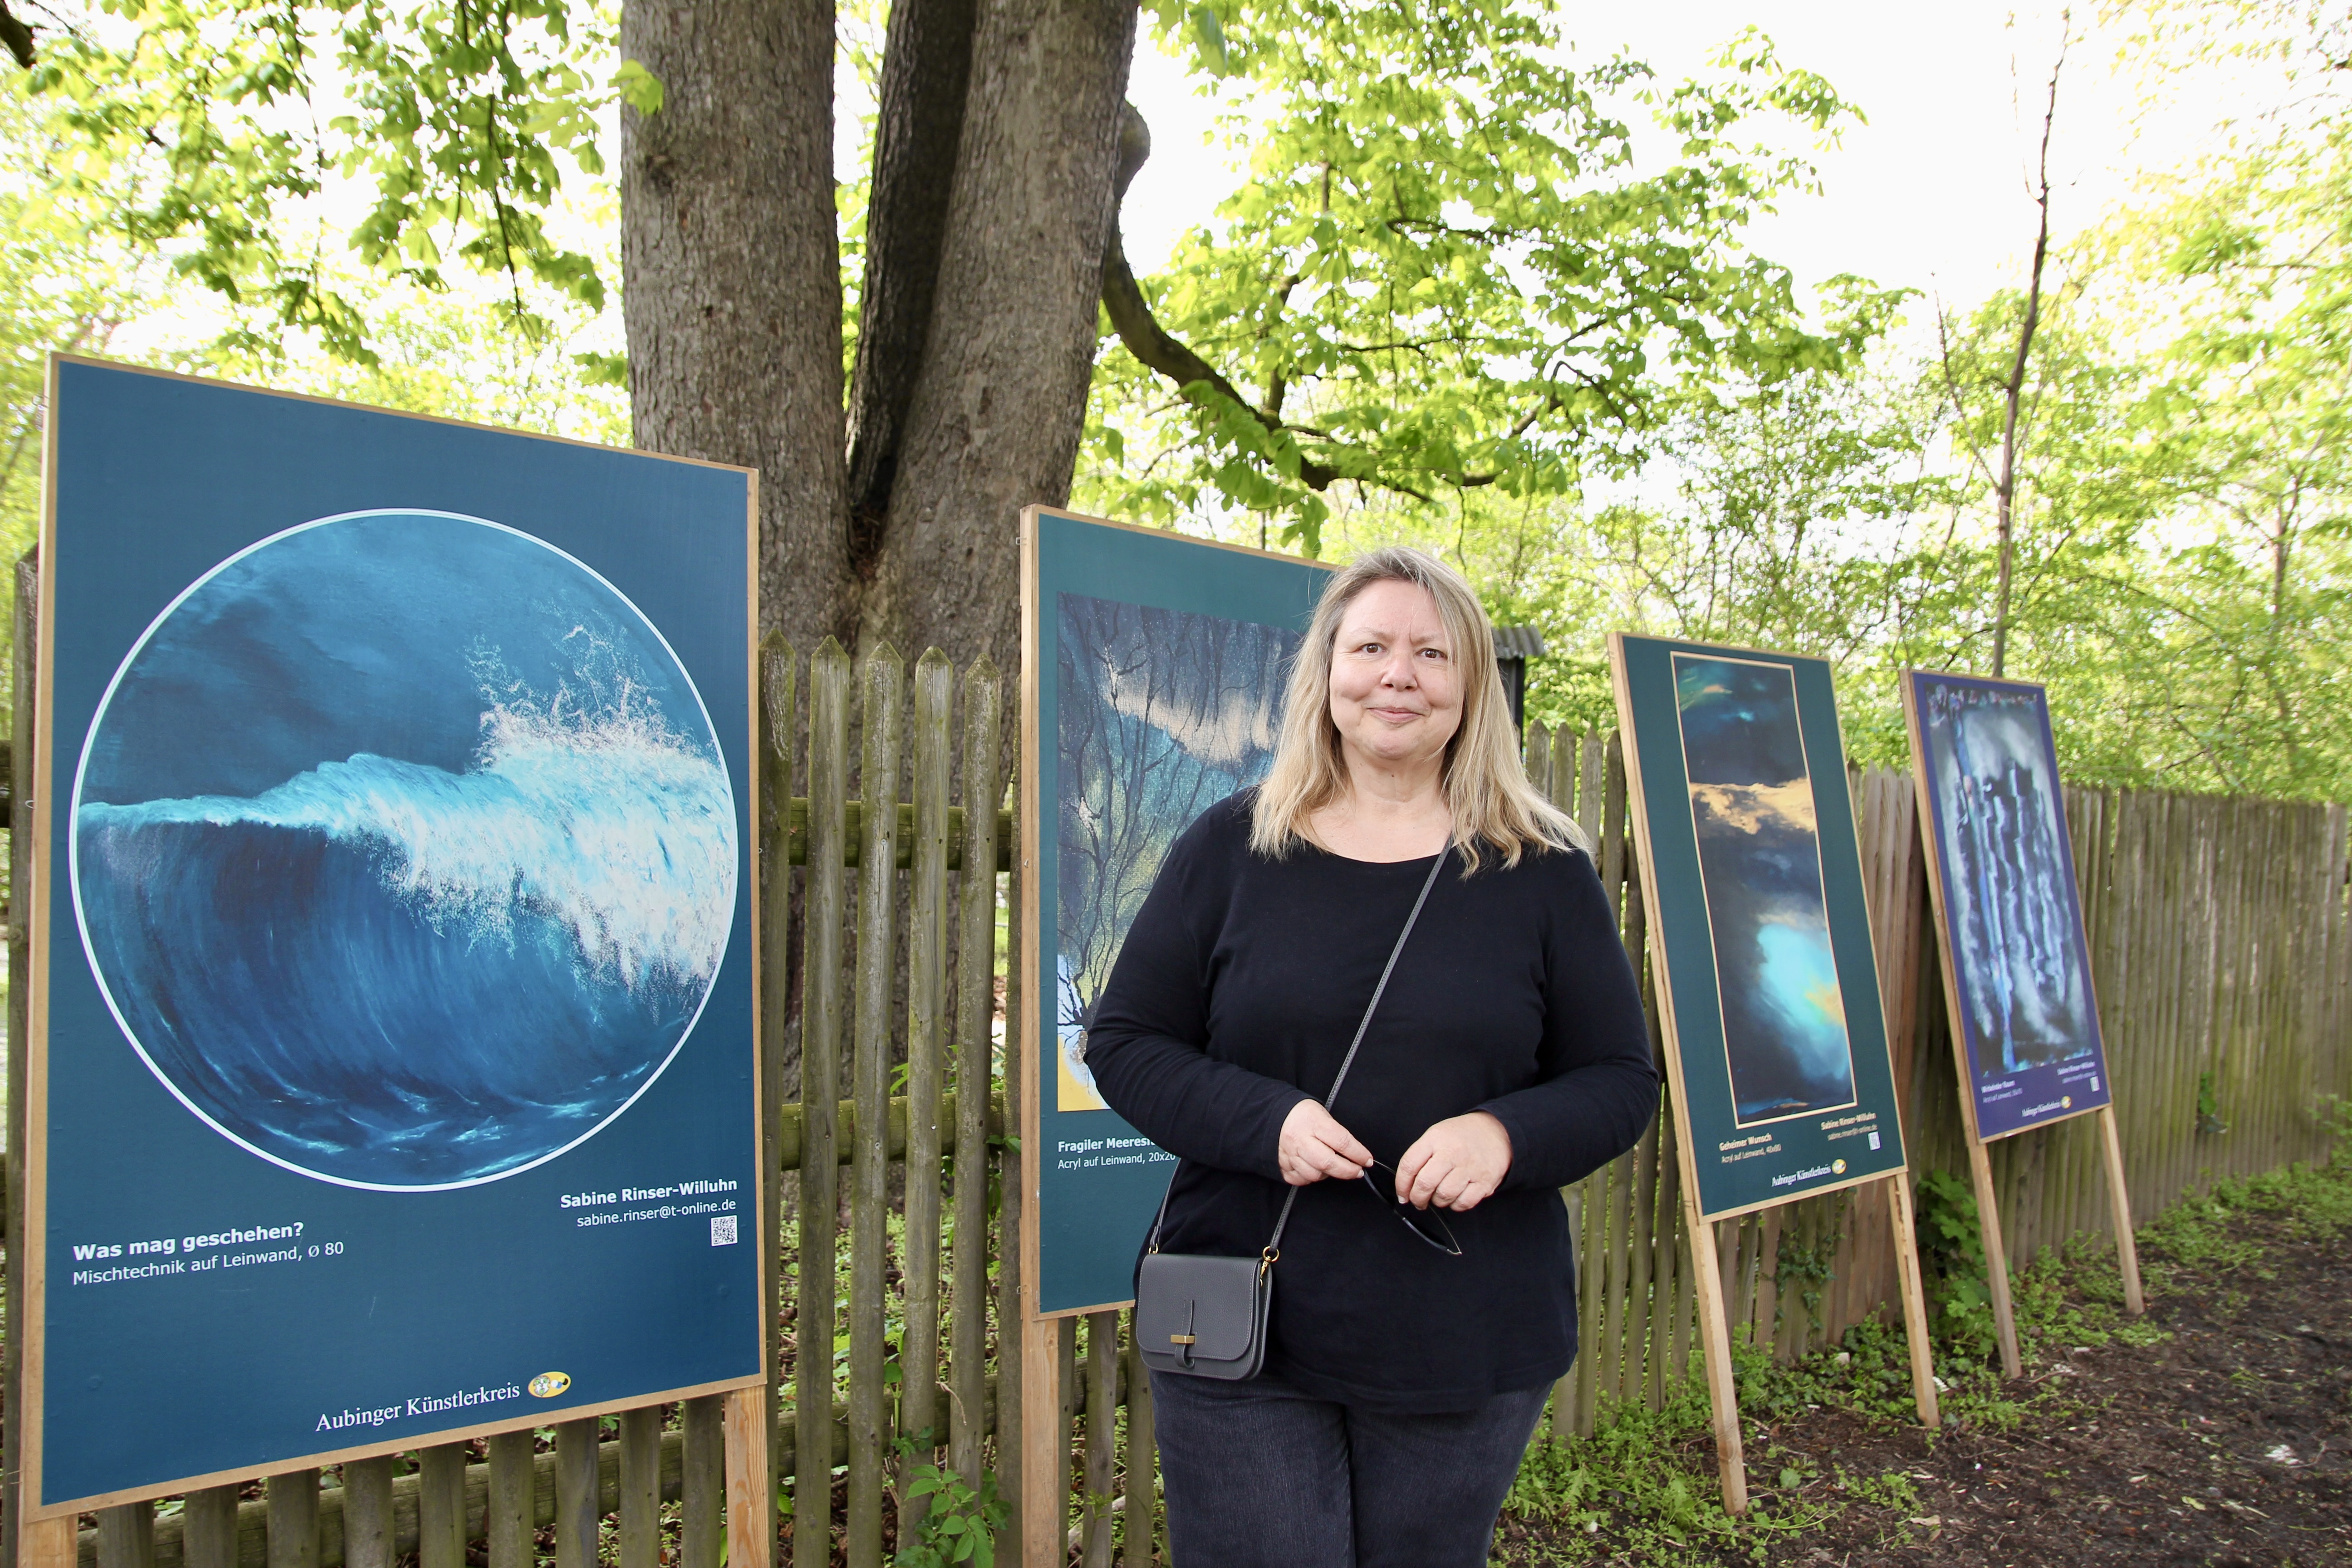 Hat die Ausstellung organisiert und alle Bilder in wetterfeste Plakate verwandelt: Sabine Rinser